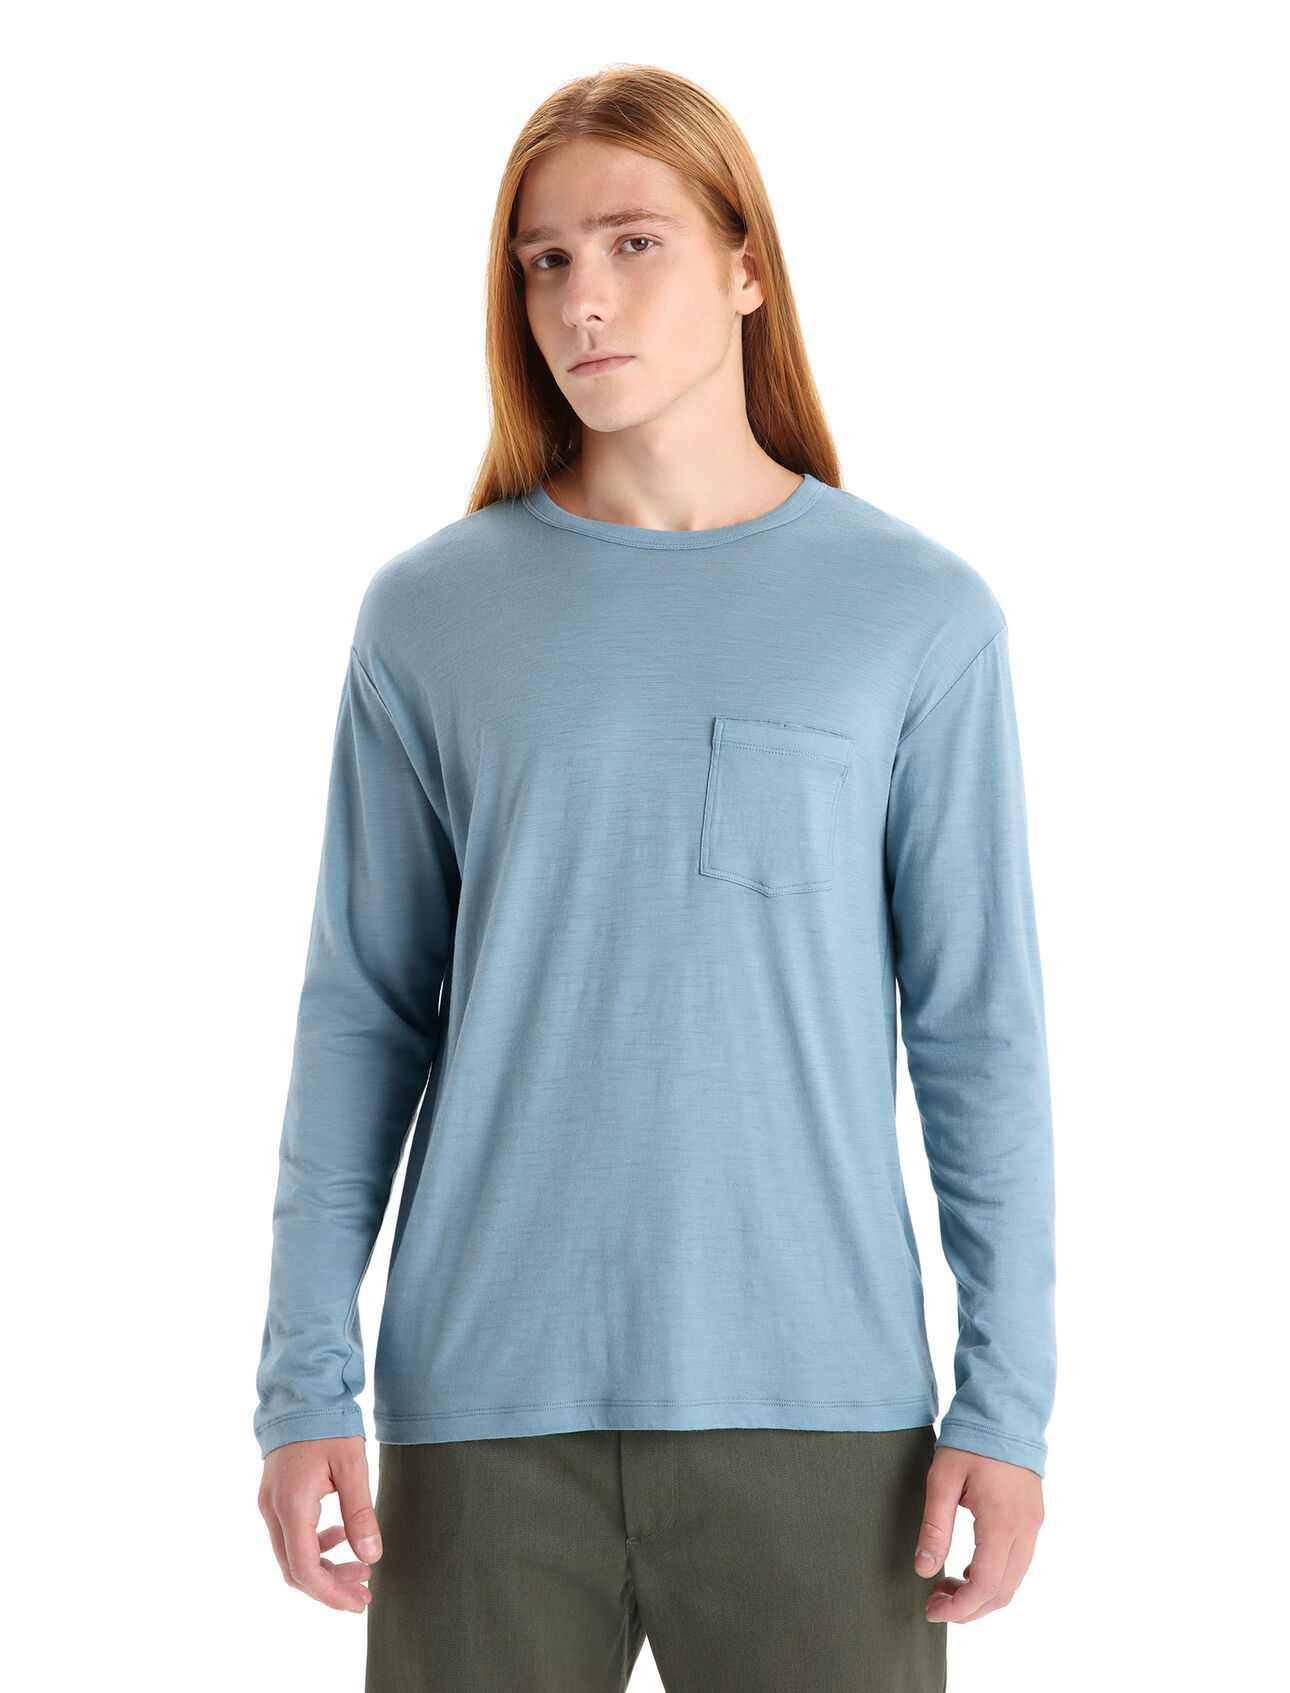 Heren Granary T-shirt met lange mouwen en borstzakje van merinowol De Granary is een klassiek T-shirt met lange mouwen en borstzakje. De top heeft een relaxte pasvorm en is gemaakt van zachte, ademende stof van 100% merinowol. Het stijlvolle shirt biedt een alledaags comfort. 